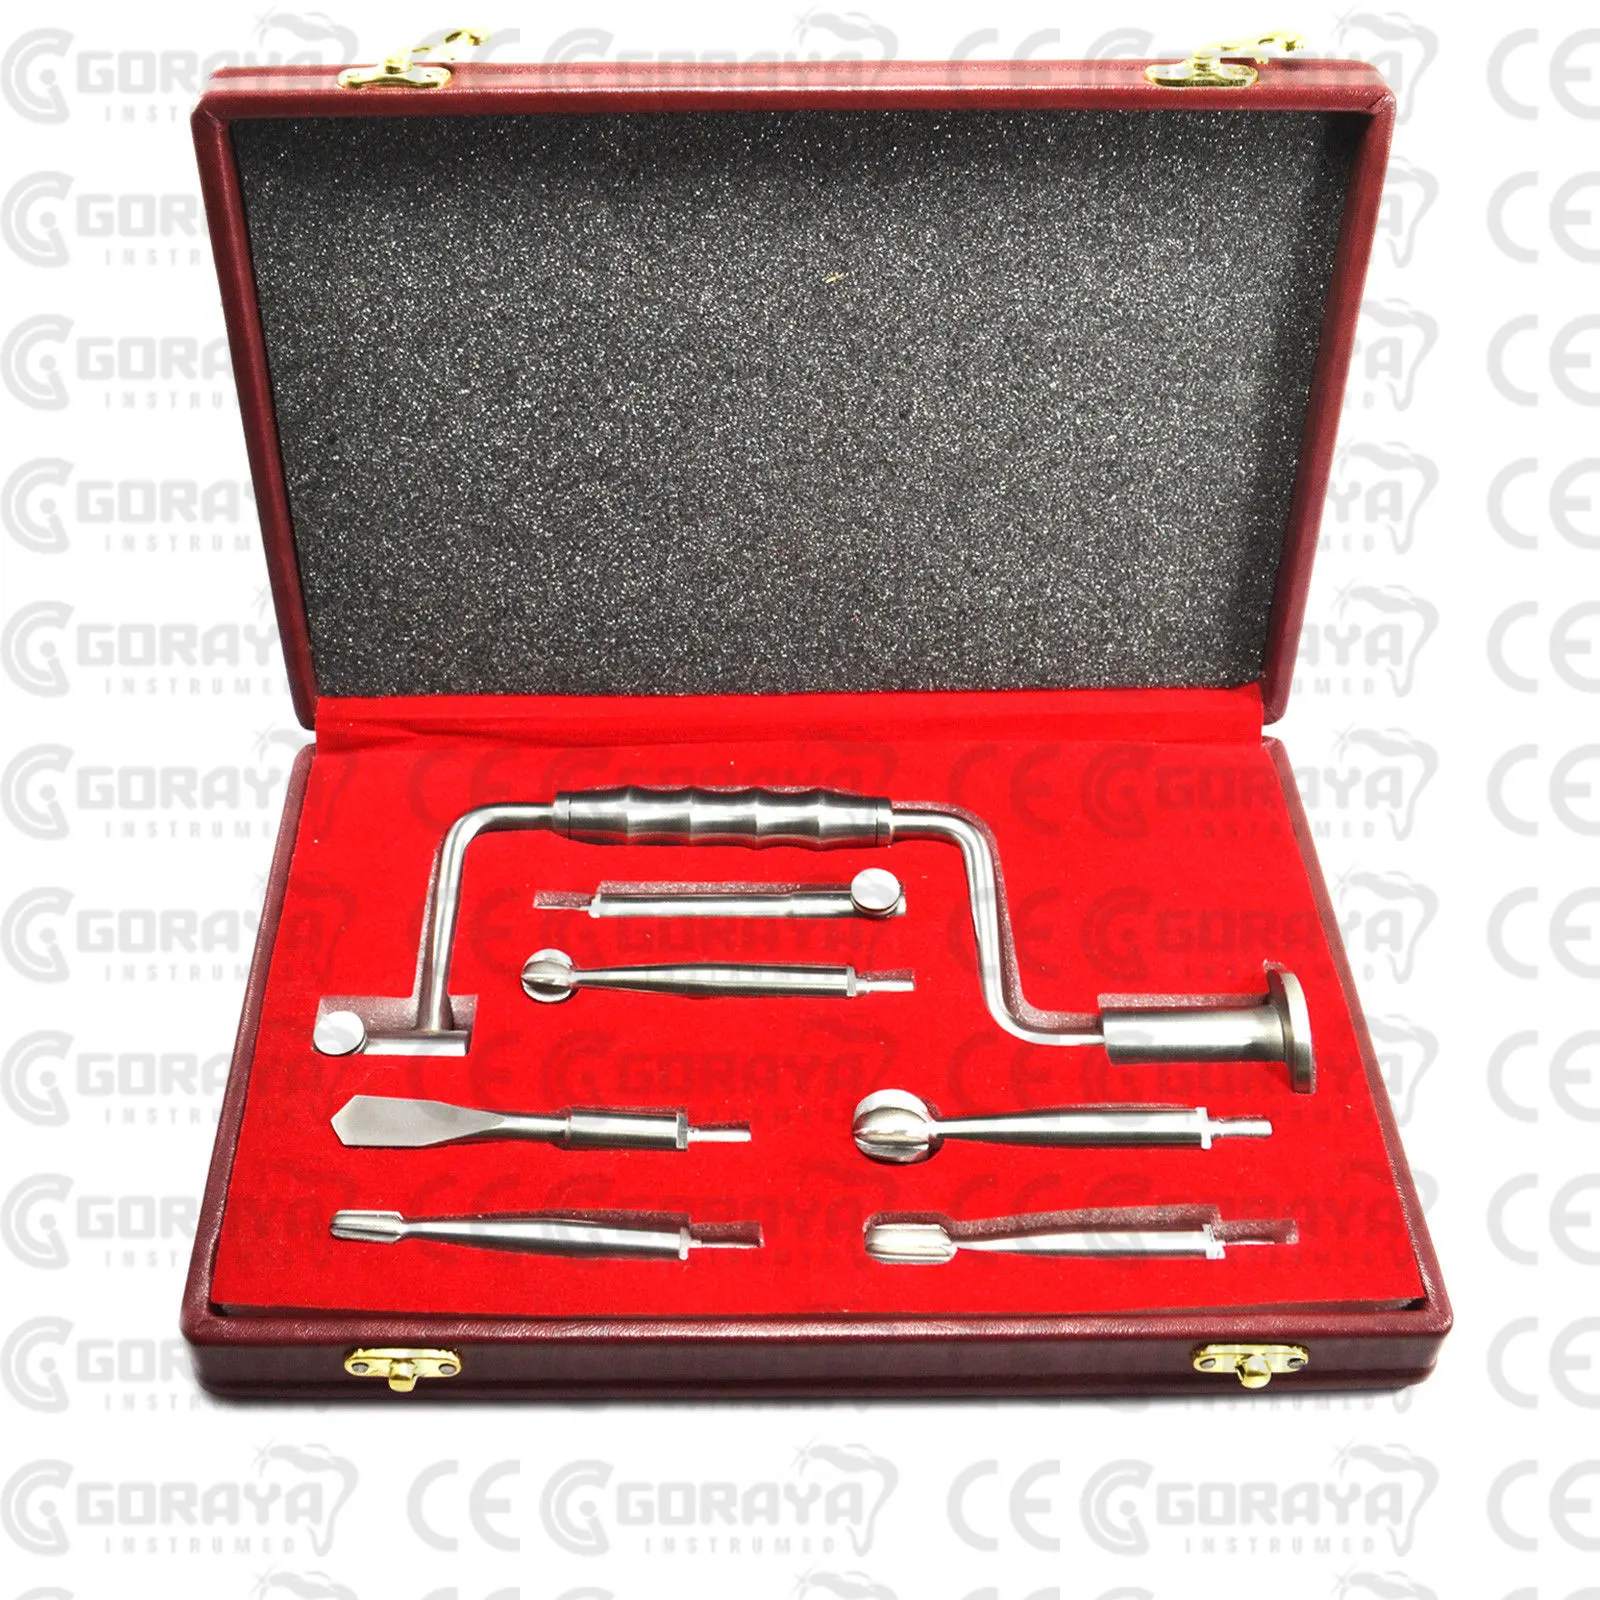 GORAYA-Instrumento ortopédico quirúrgico, instrumento de mano con taladro, aprobado por CE ISO, alemán, Kennedy, gran oferta